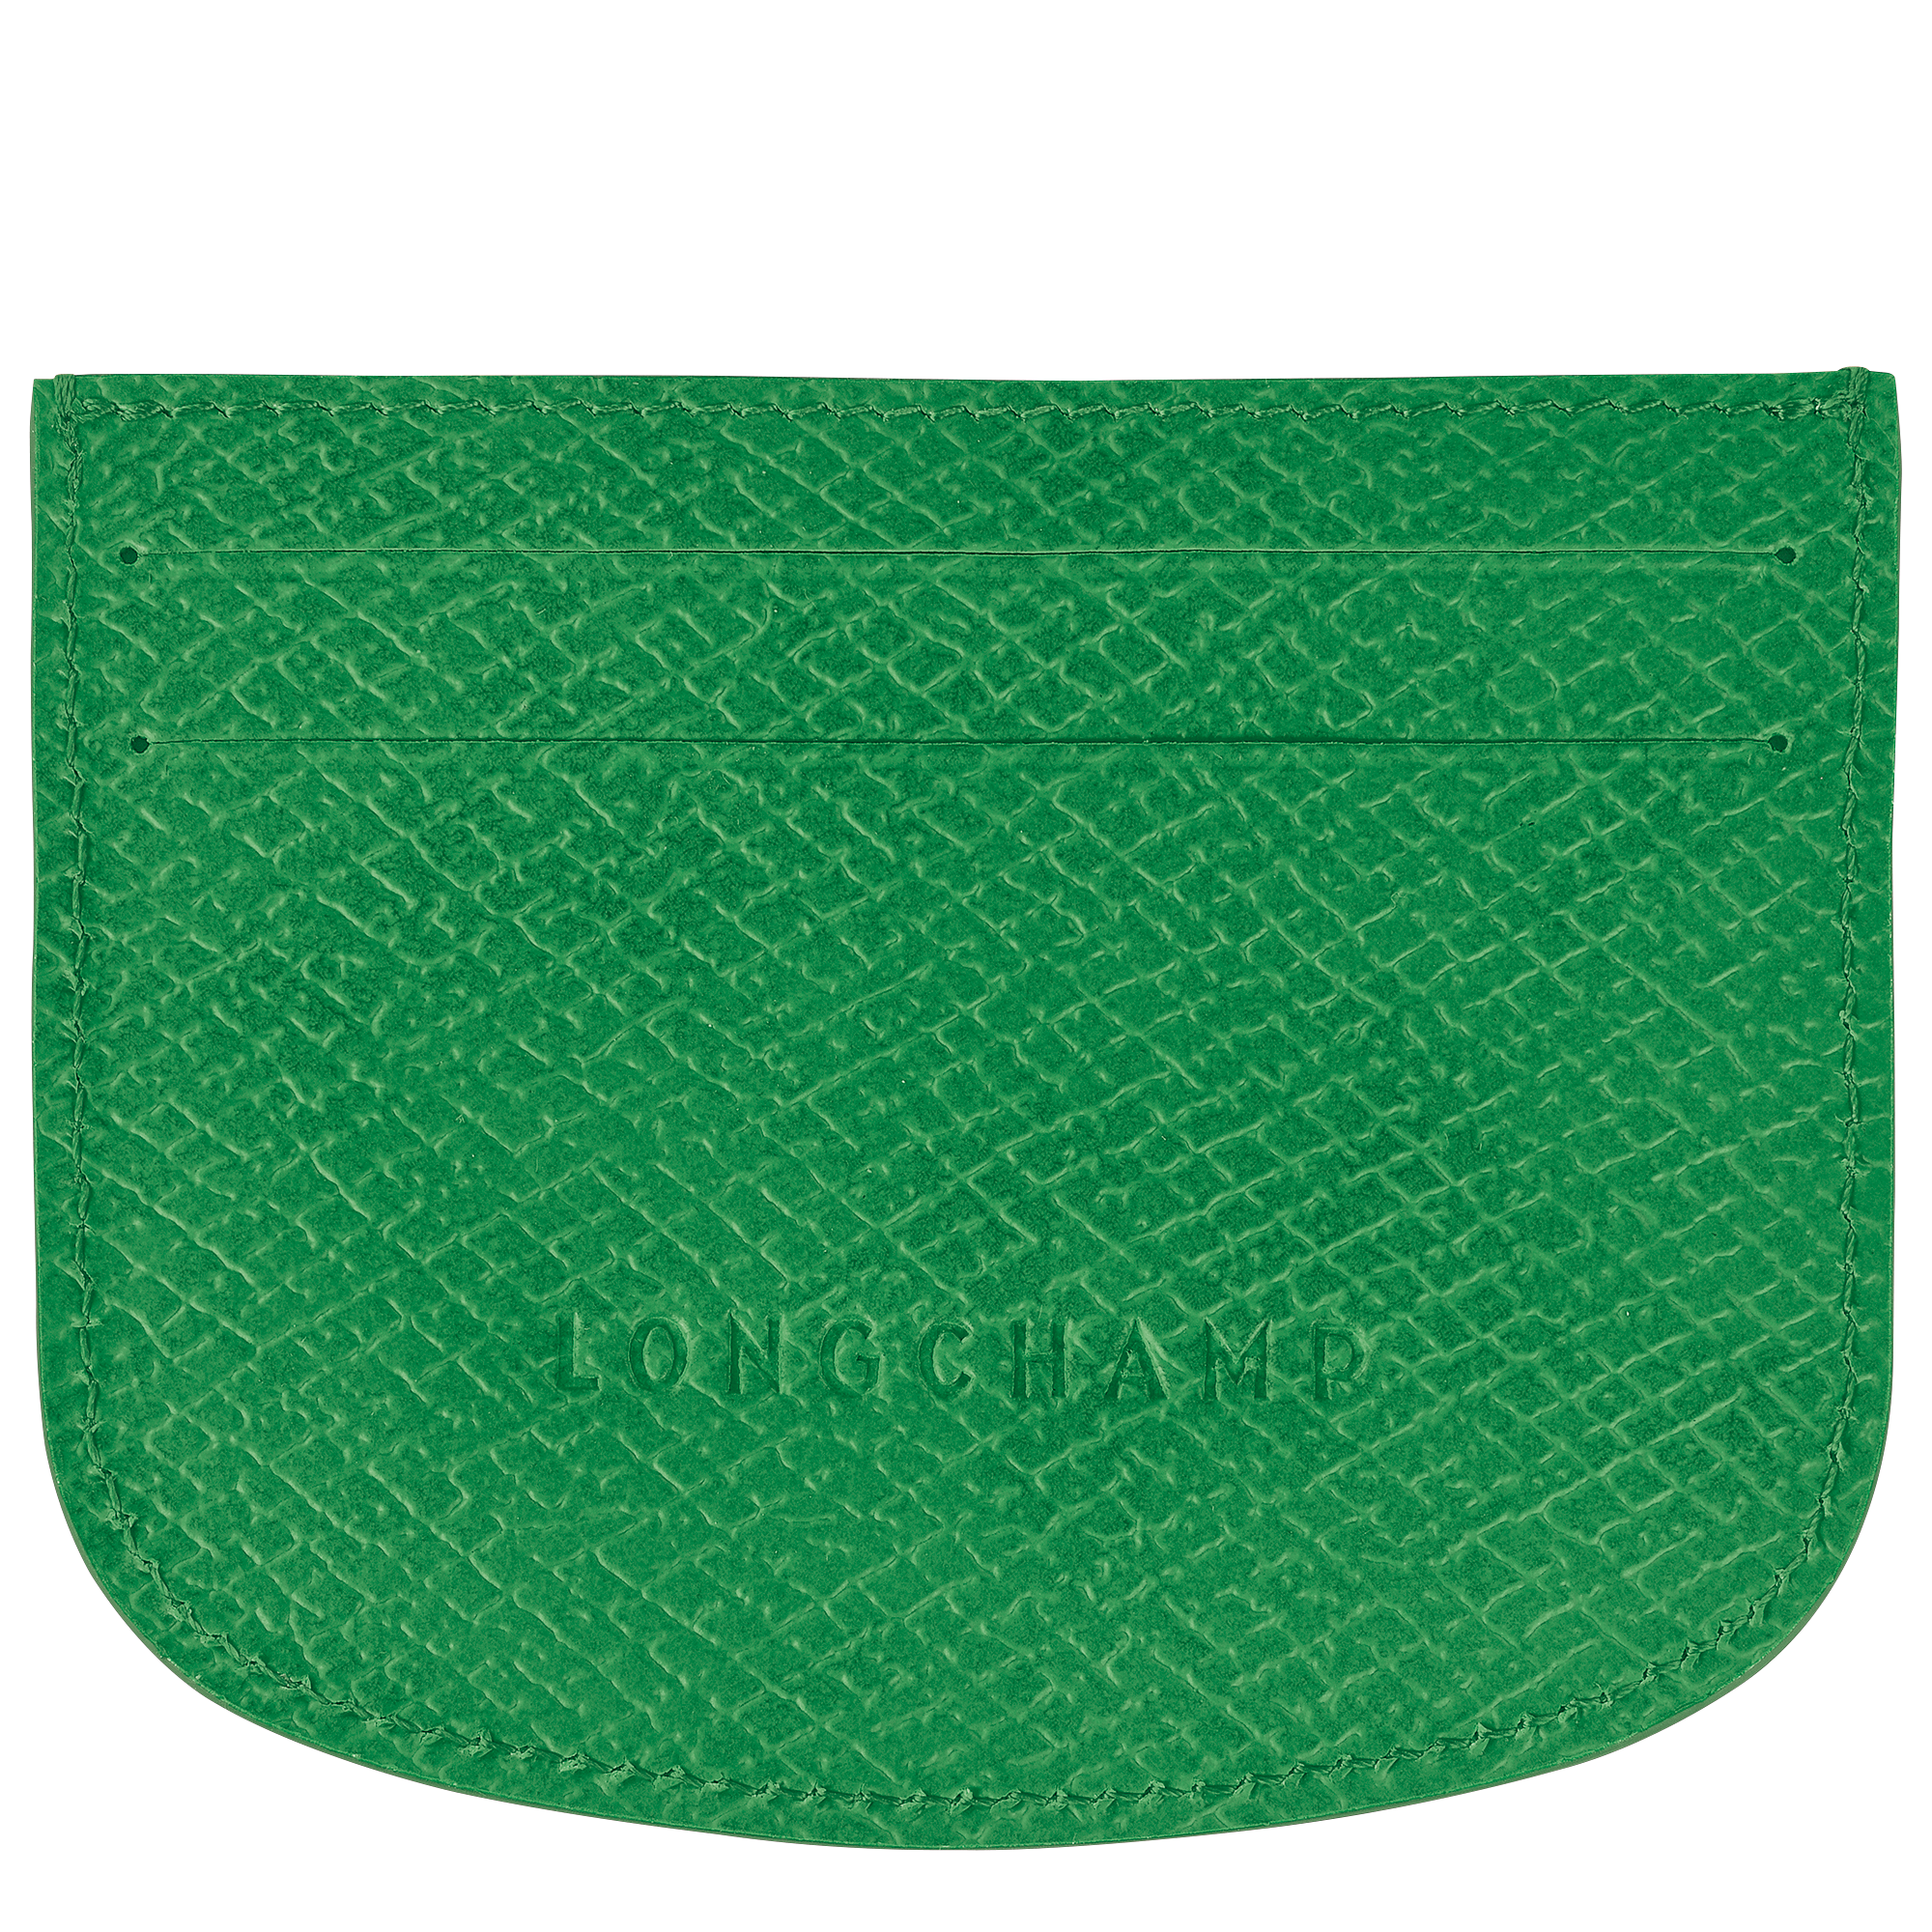 Épure Card holder, Green